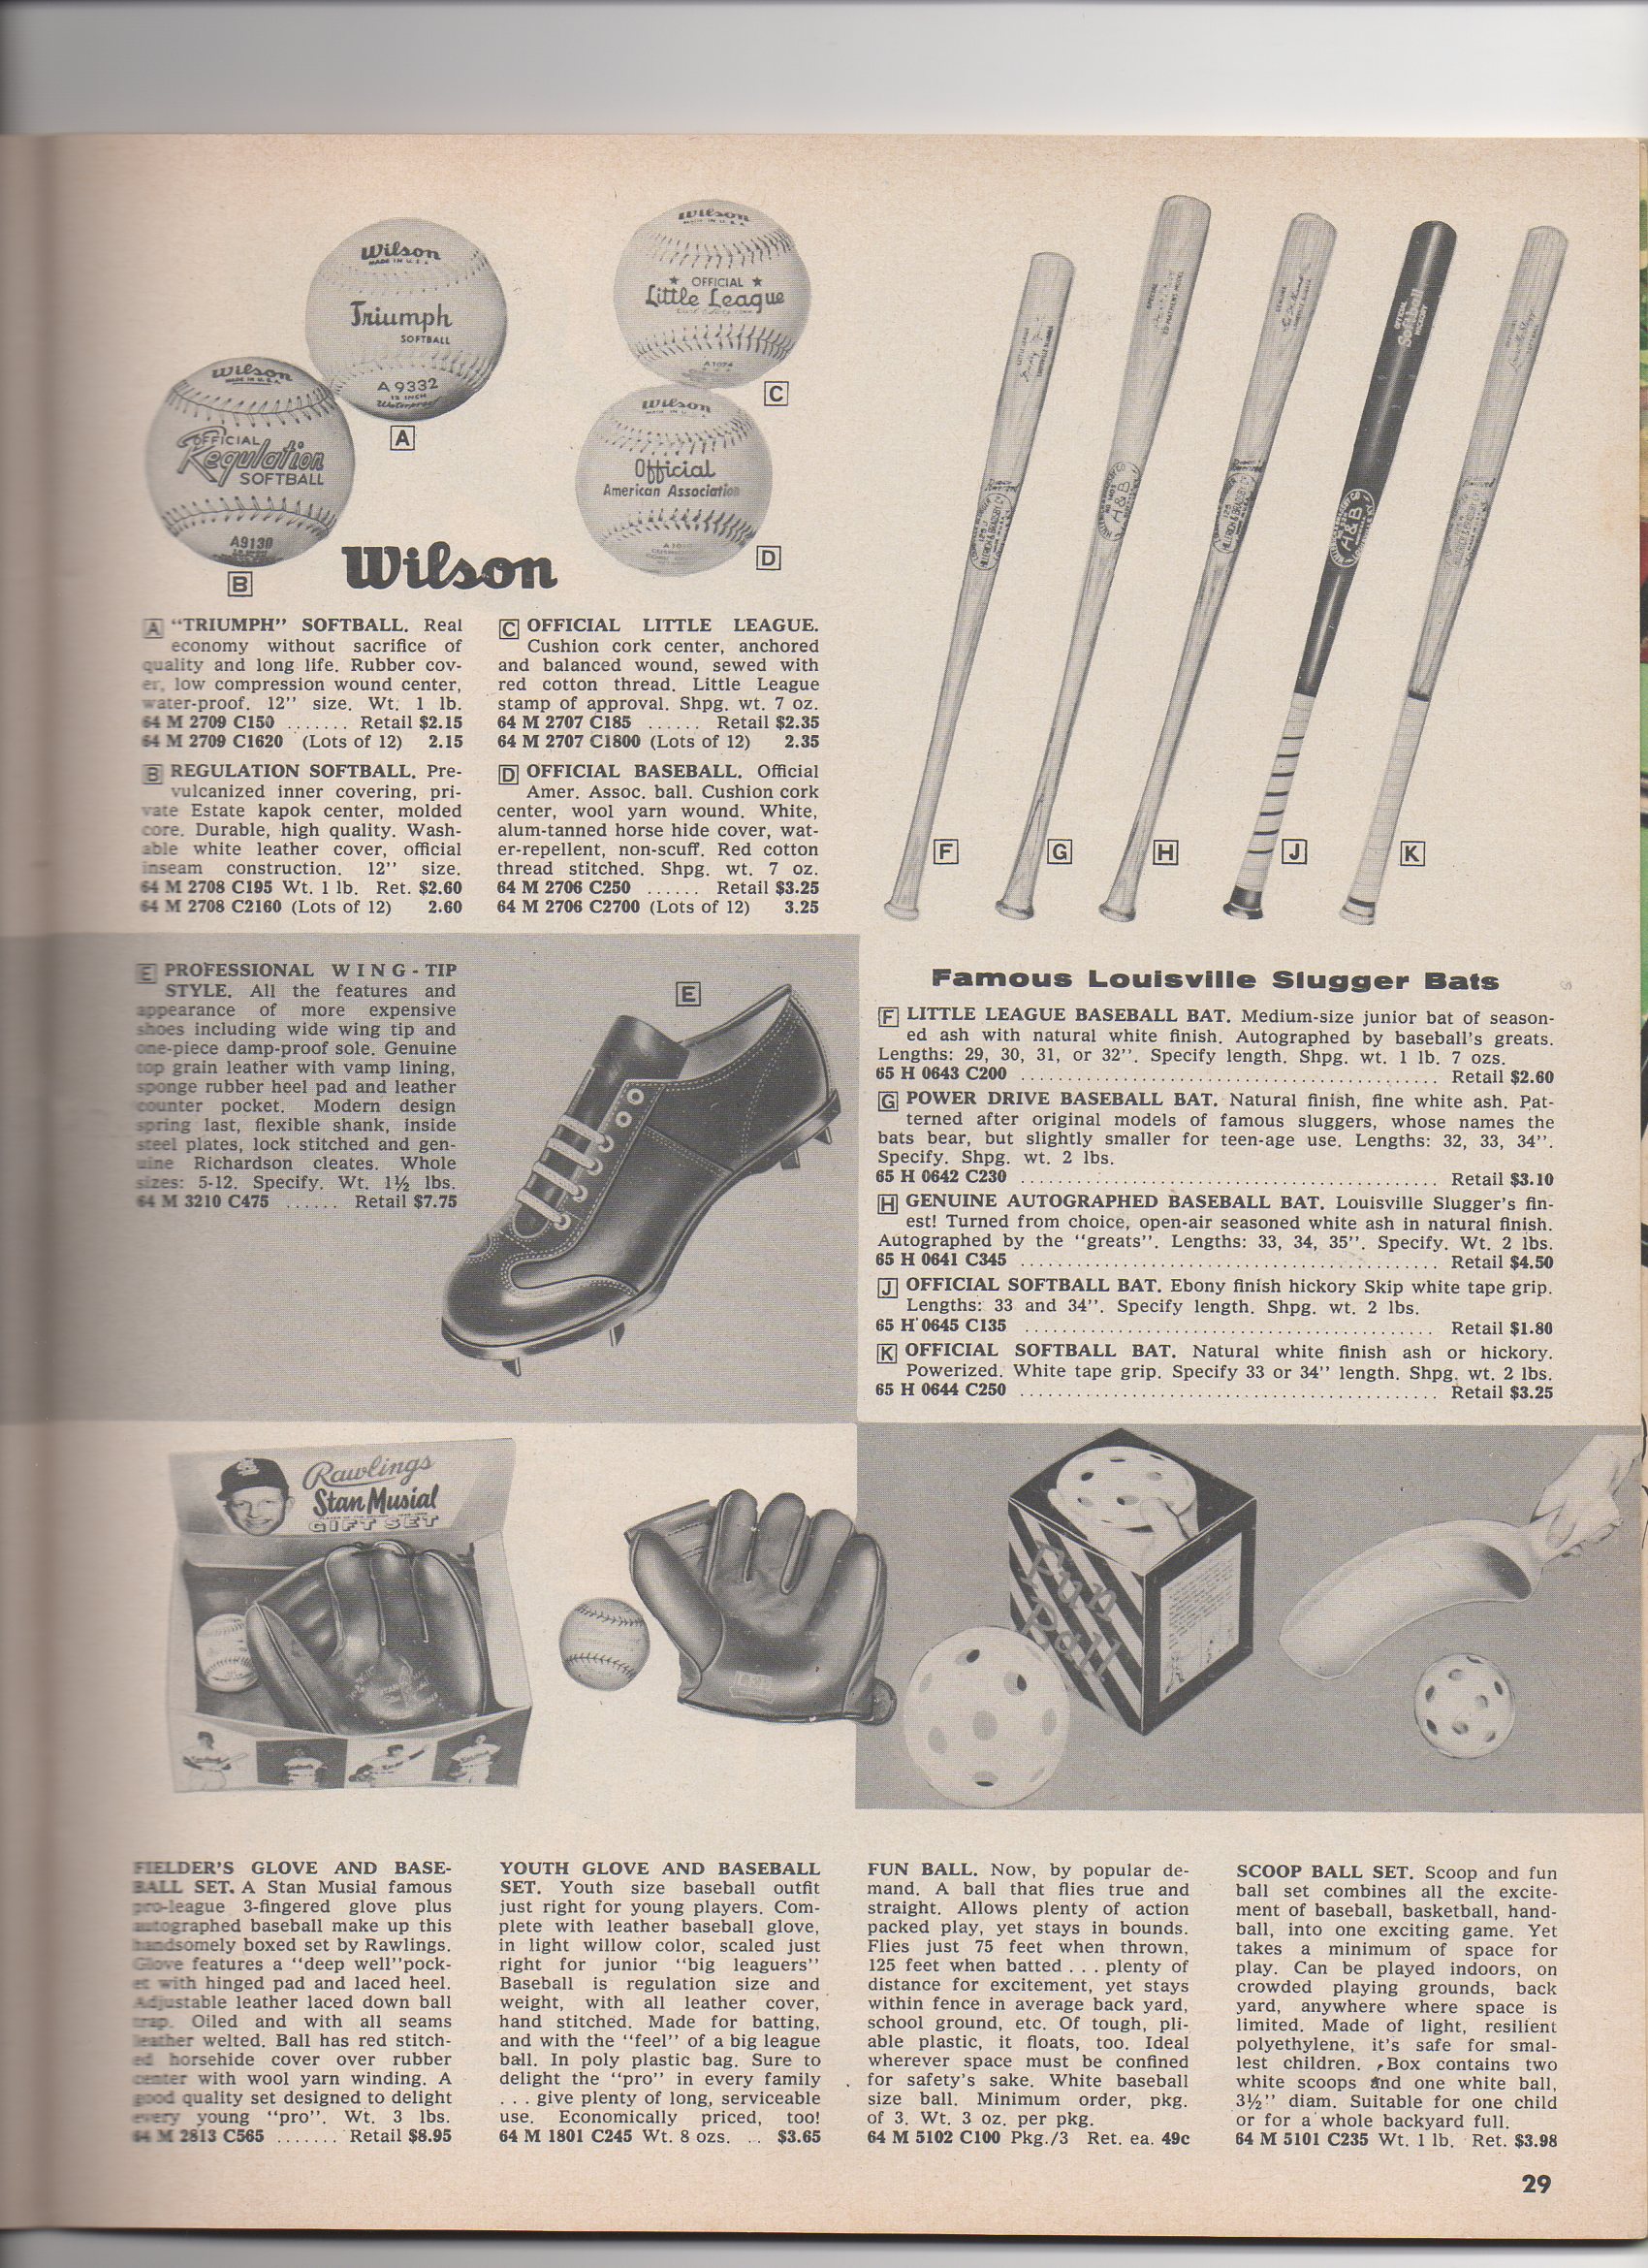 1959 spors catalog